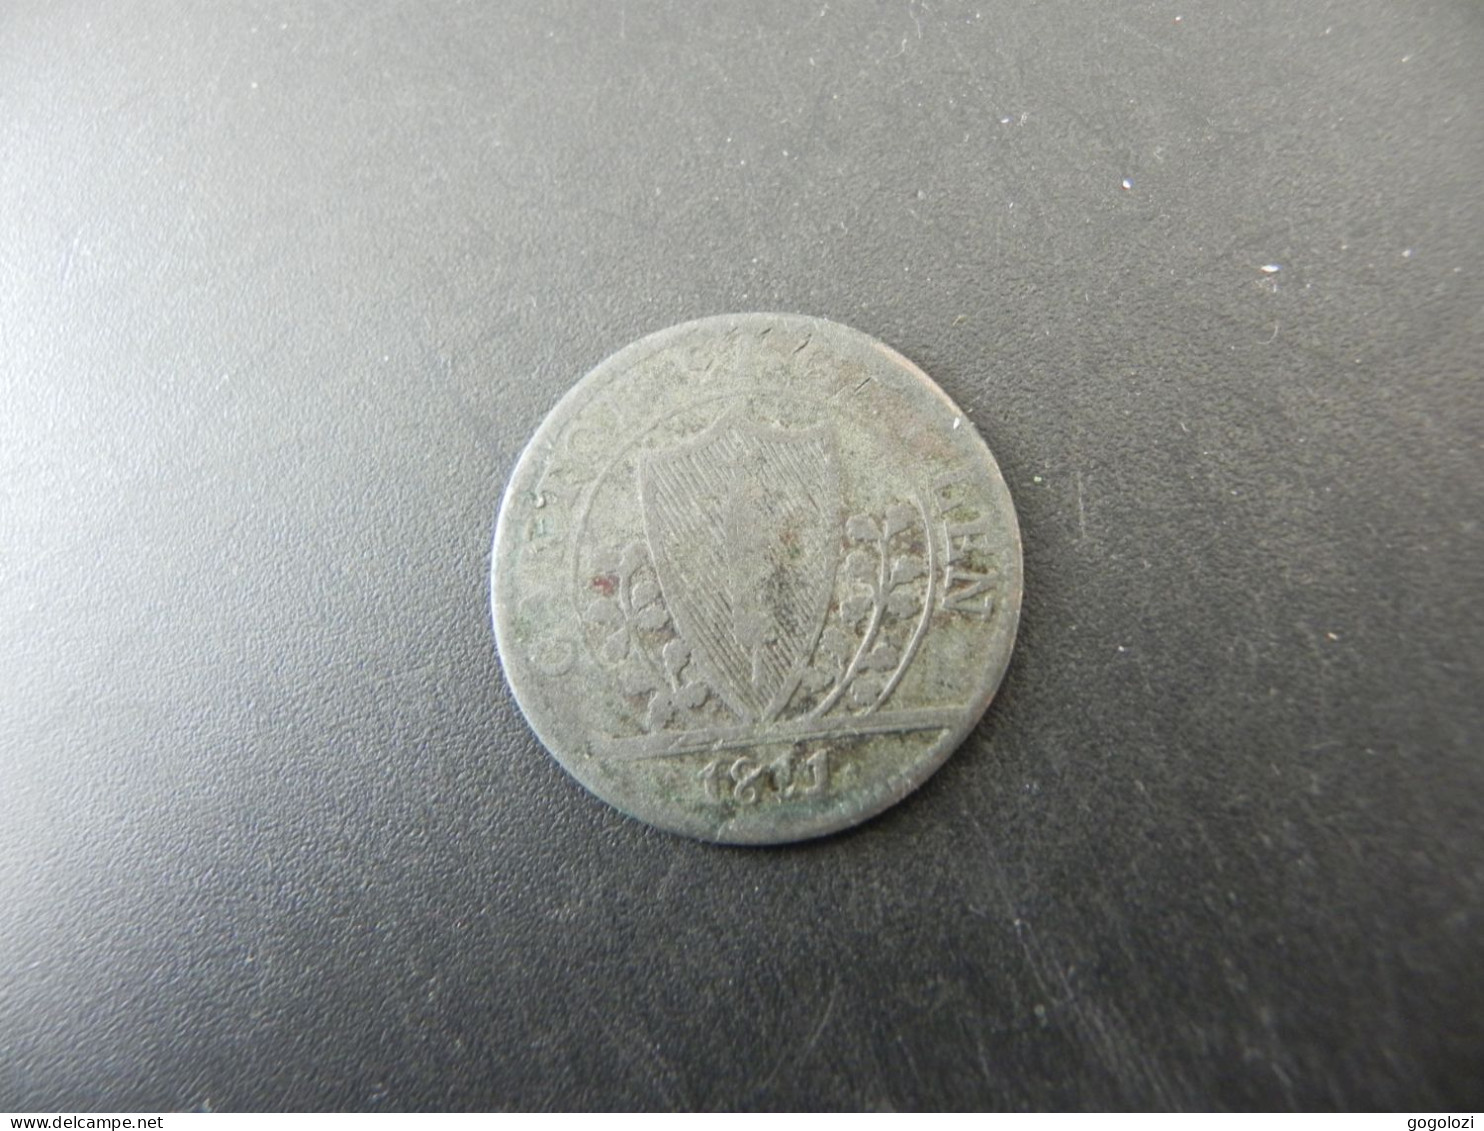 Schweiz Suisse Switzerland St. Gallen 1 Bazen 1811 - Monnaies Cantonales